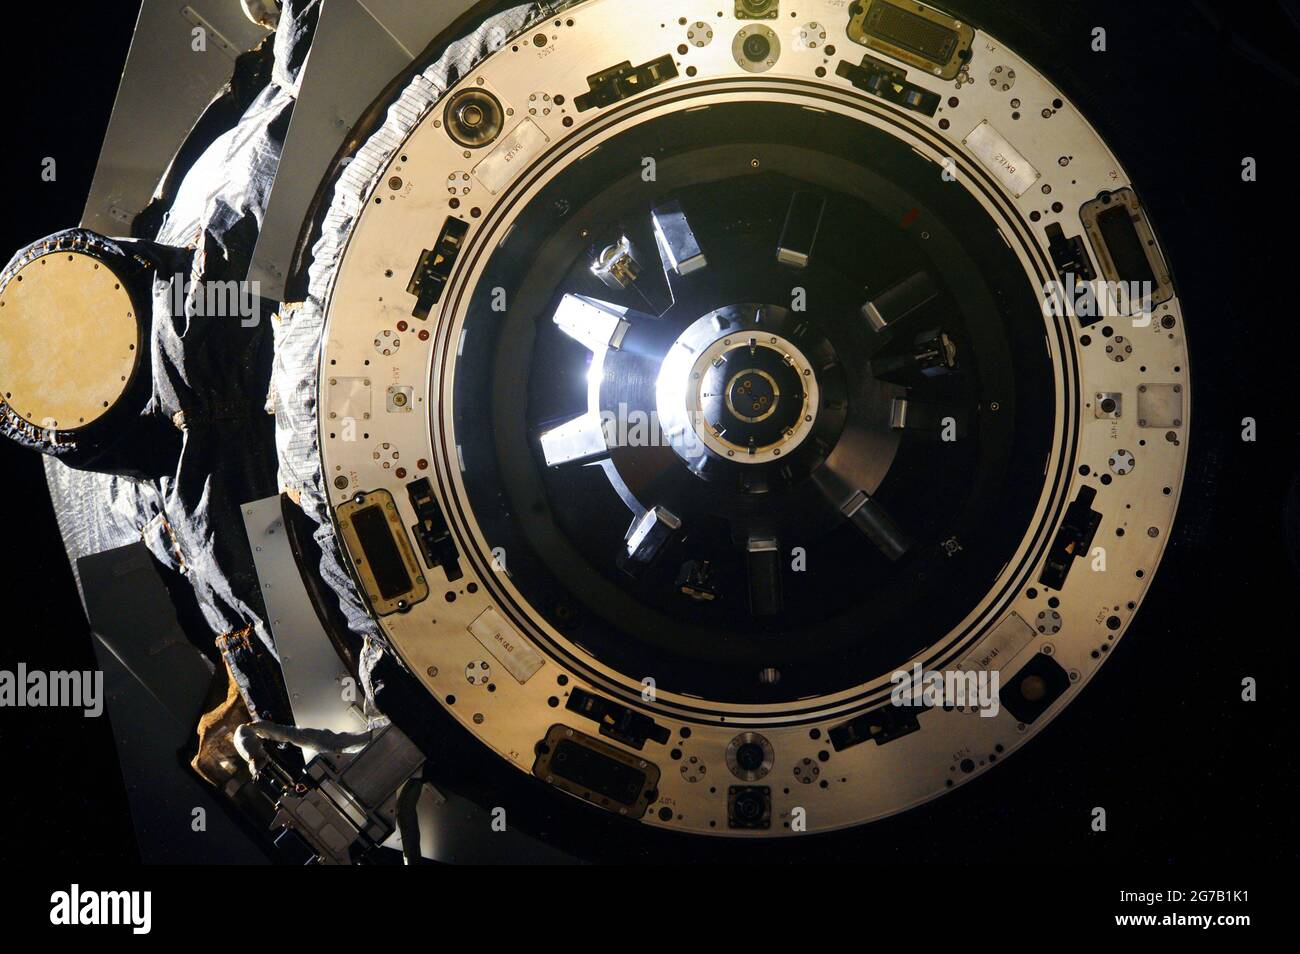 Station spatiale internationale (ISS.) Cette vue en gros plan montre le mécanisme d'amarrage de l'embarcation de réapprovisionnement ISS Progress M-21M (53P) lorsqu'elle se détache du port AFT du module de service Zvezda de la Station spatiale internationale le 9 juin 2014. Une version optimisée et améliorée unique d'une image / crédit de la NASA : NASA Banque D'Images